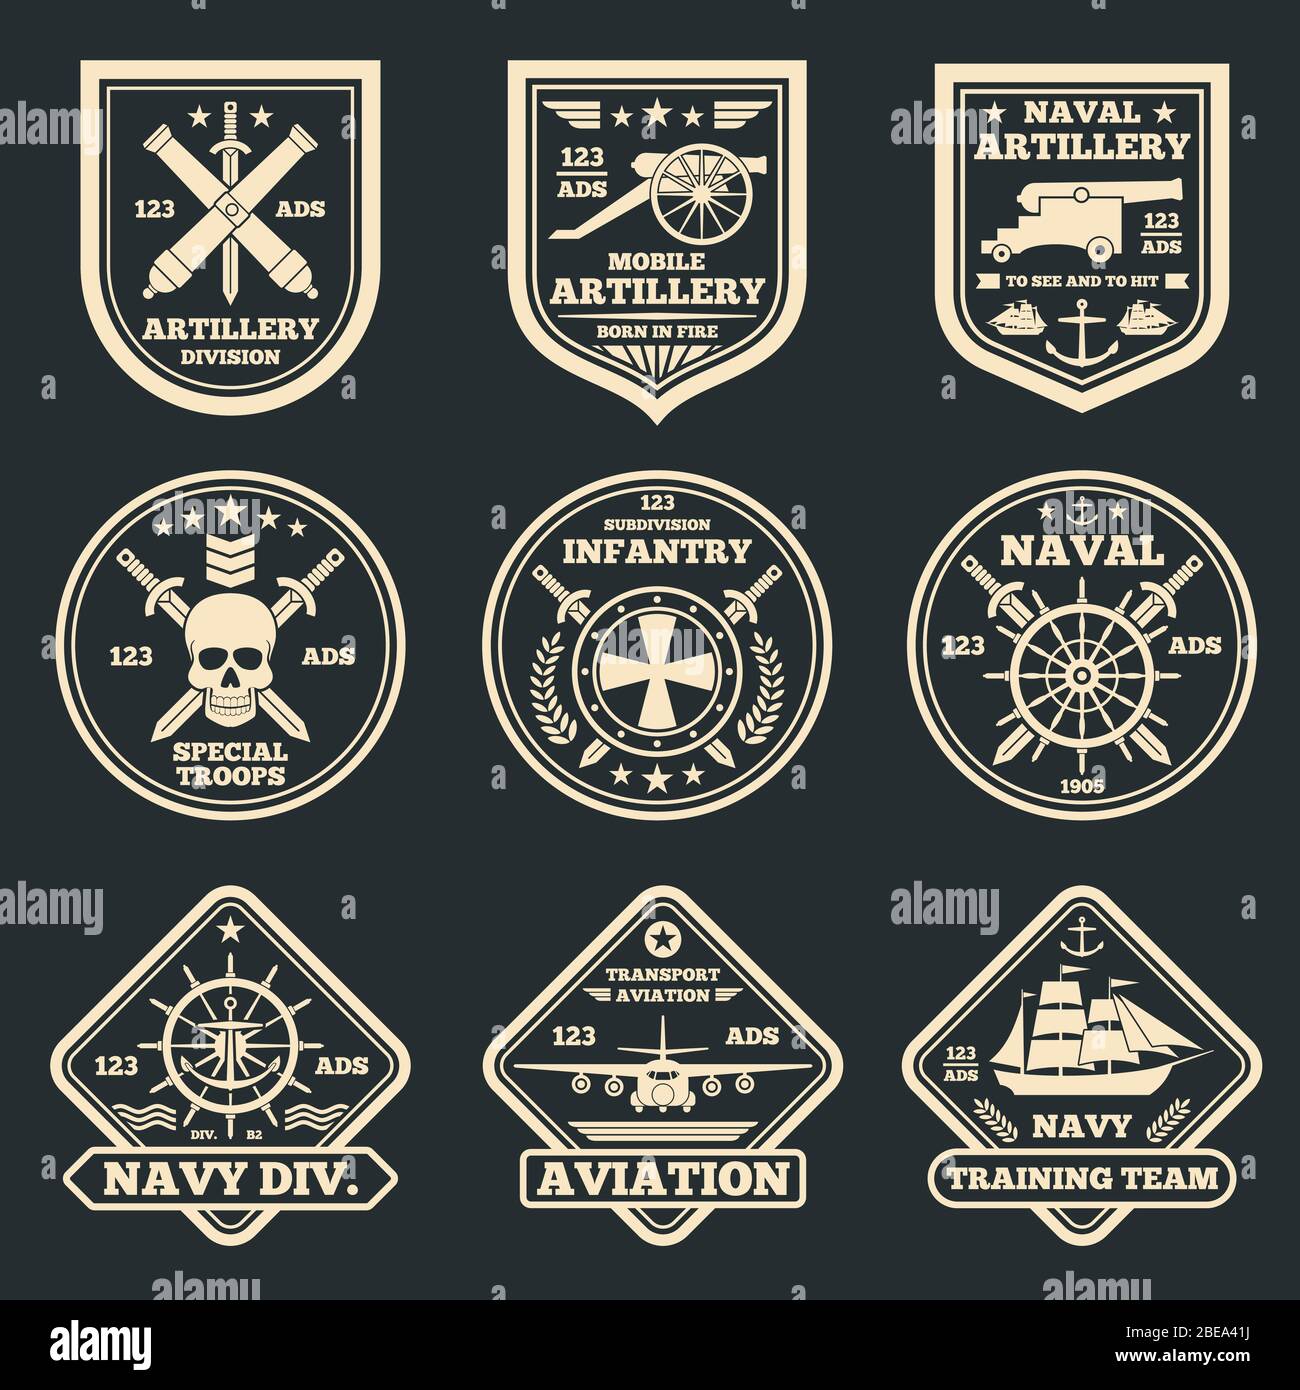 https://c8.alamy.com/compde/2bea41j/vintage-militar-und-armee-vektor-embleme-abzeichen-und-etiketten-etikett-und-aufkleber-luftfahrt-armee-und-infanterie-illustration-2bea41j.jpg